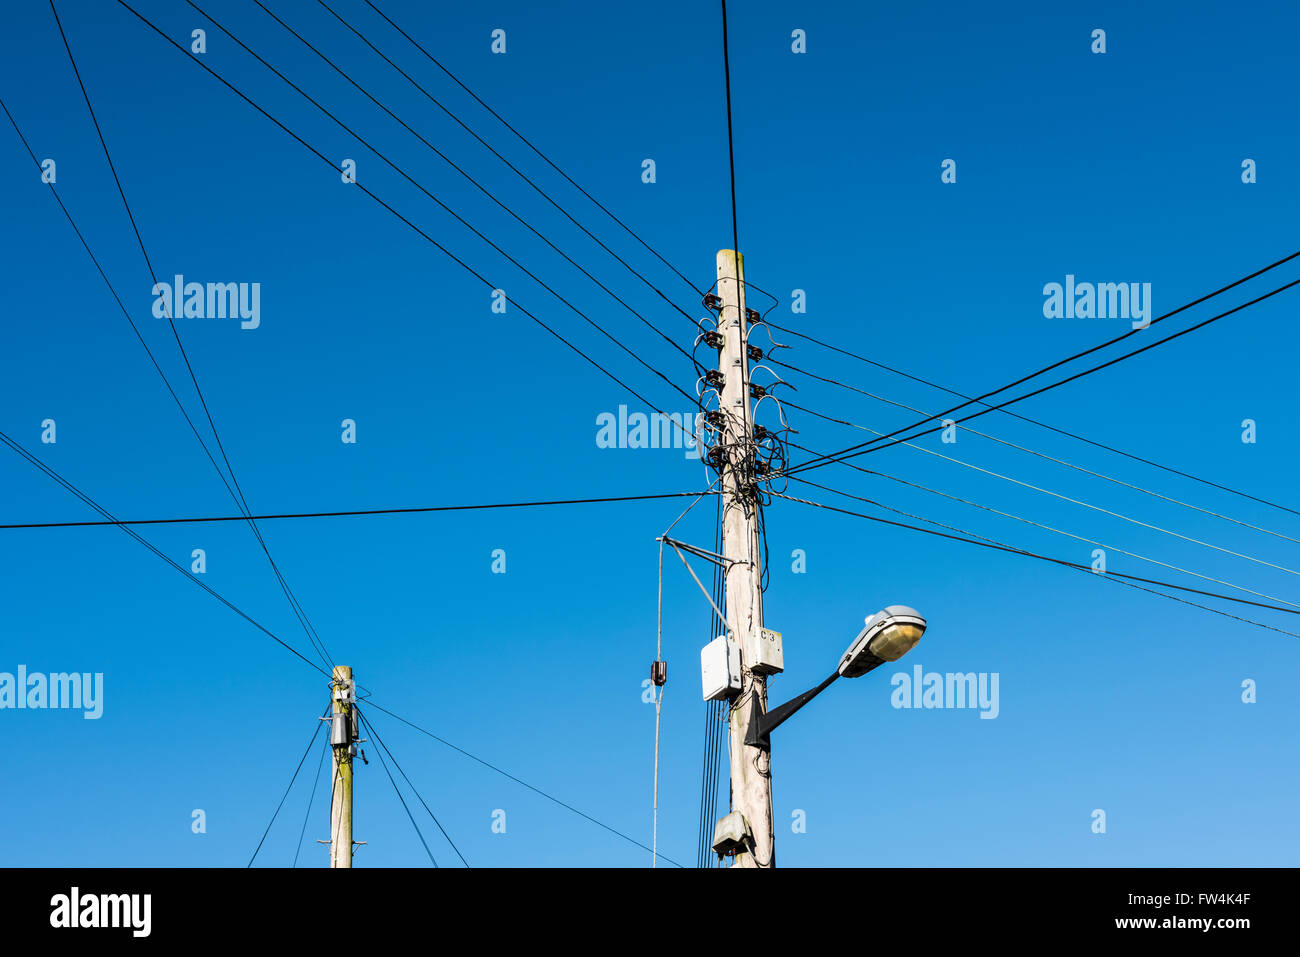 Obenliegende Strom- und Telefonkabel. Wrington, North Somerset, England. Stockfoto